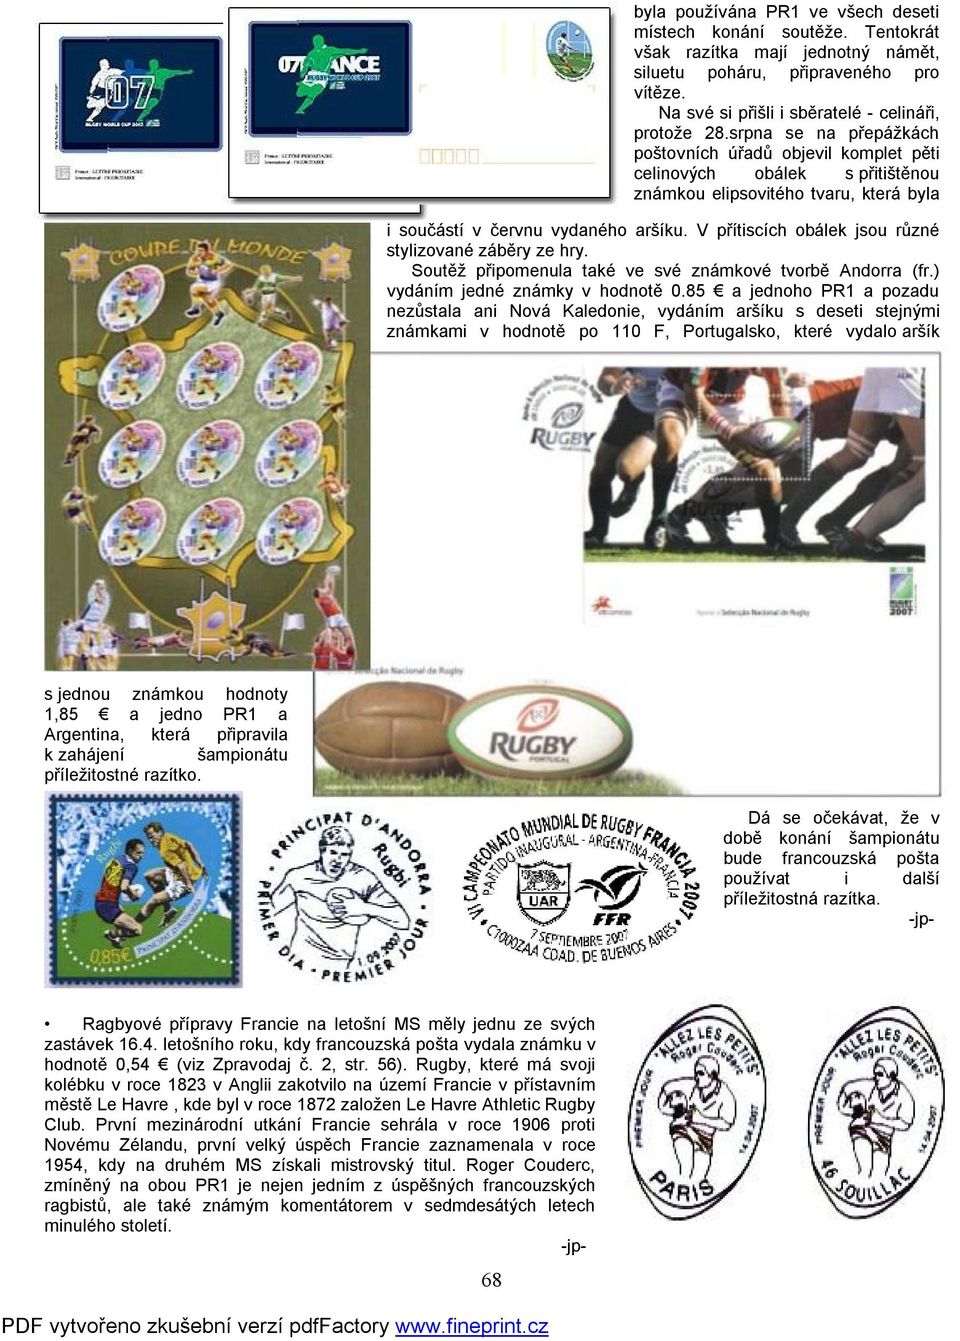 V přítiscích obálek jsou různé stylizované záběry ze hry. Soutěž připomenula také ve své známkové tvorbě Andorra (fr.) vydáním jedné známky v hodnotě 0.